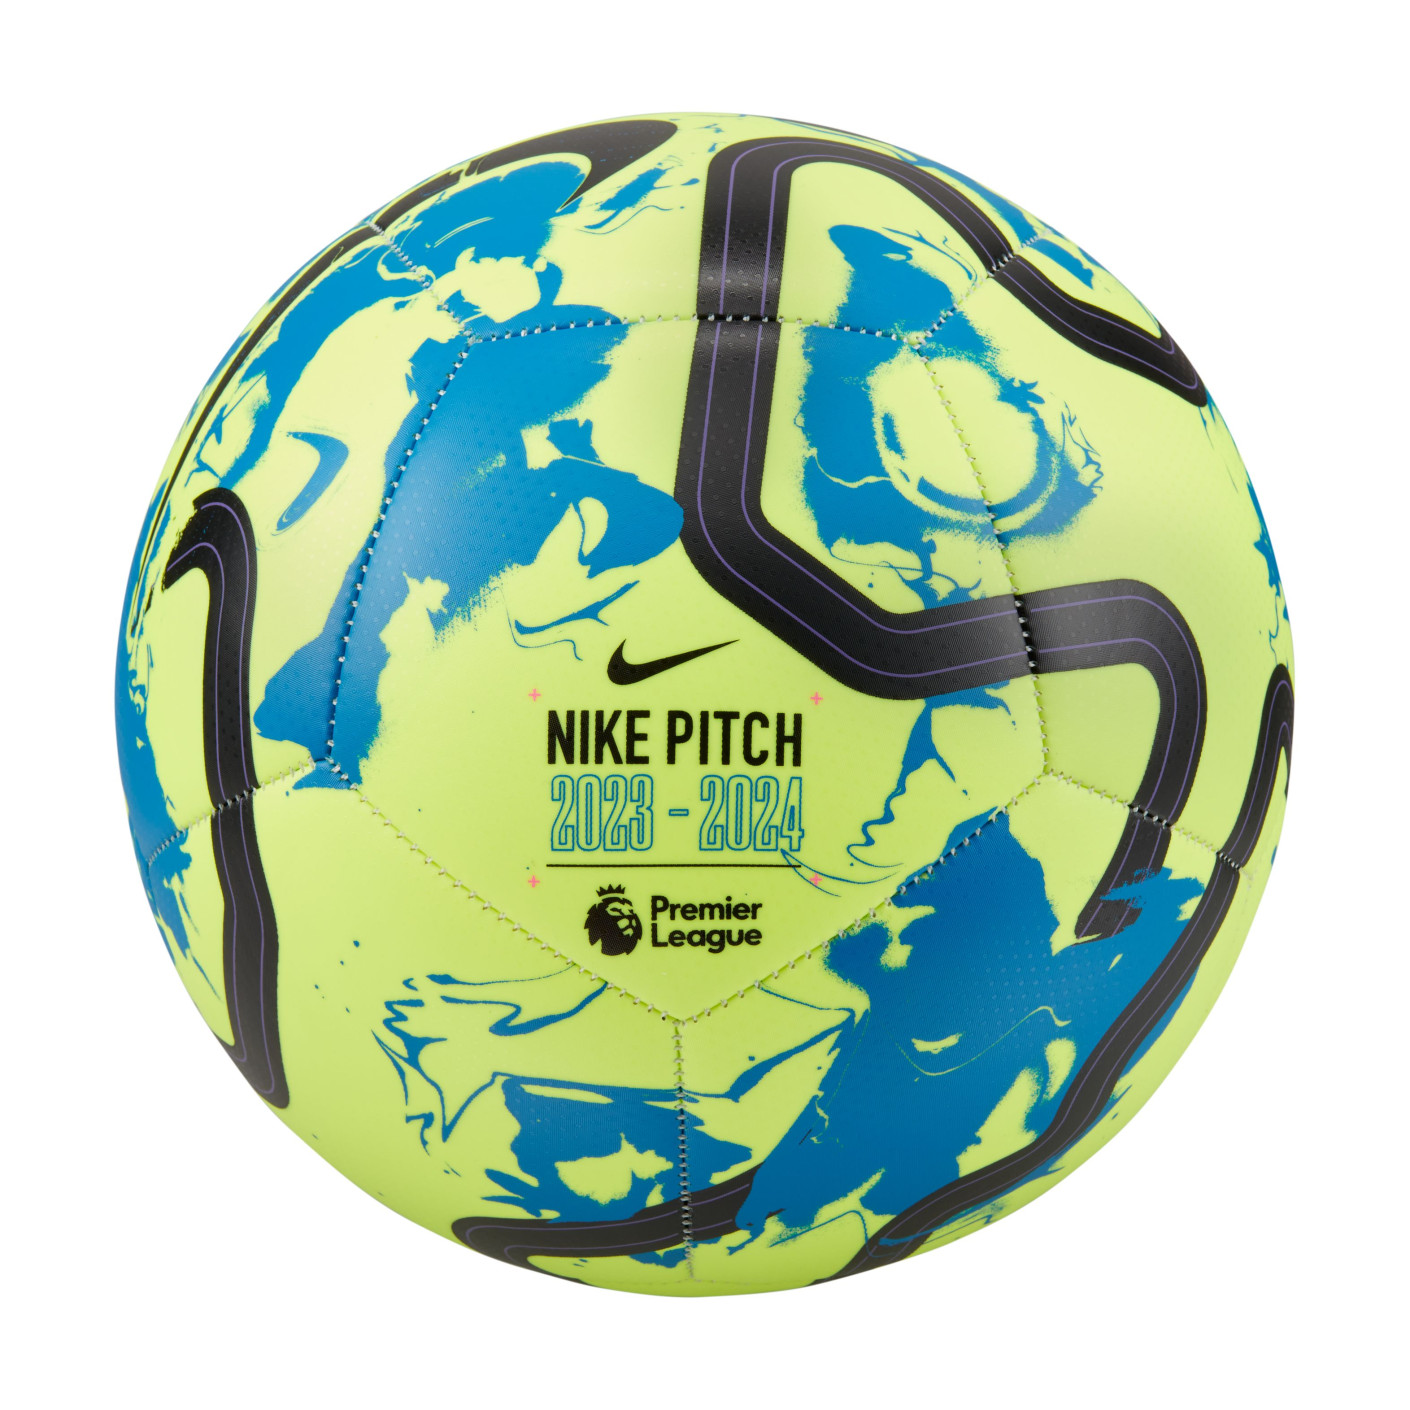 Donker worden Boos verachten Nike Premier League Pitch Voetbal Maat 5 2023-2024 Geel Blauw Zwart